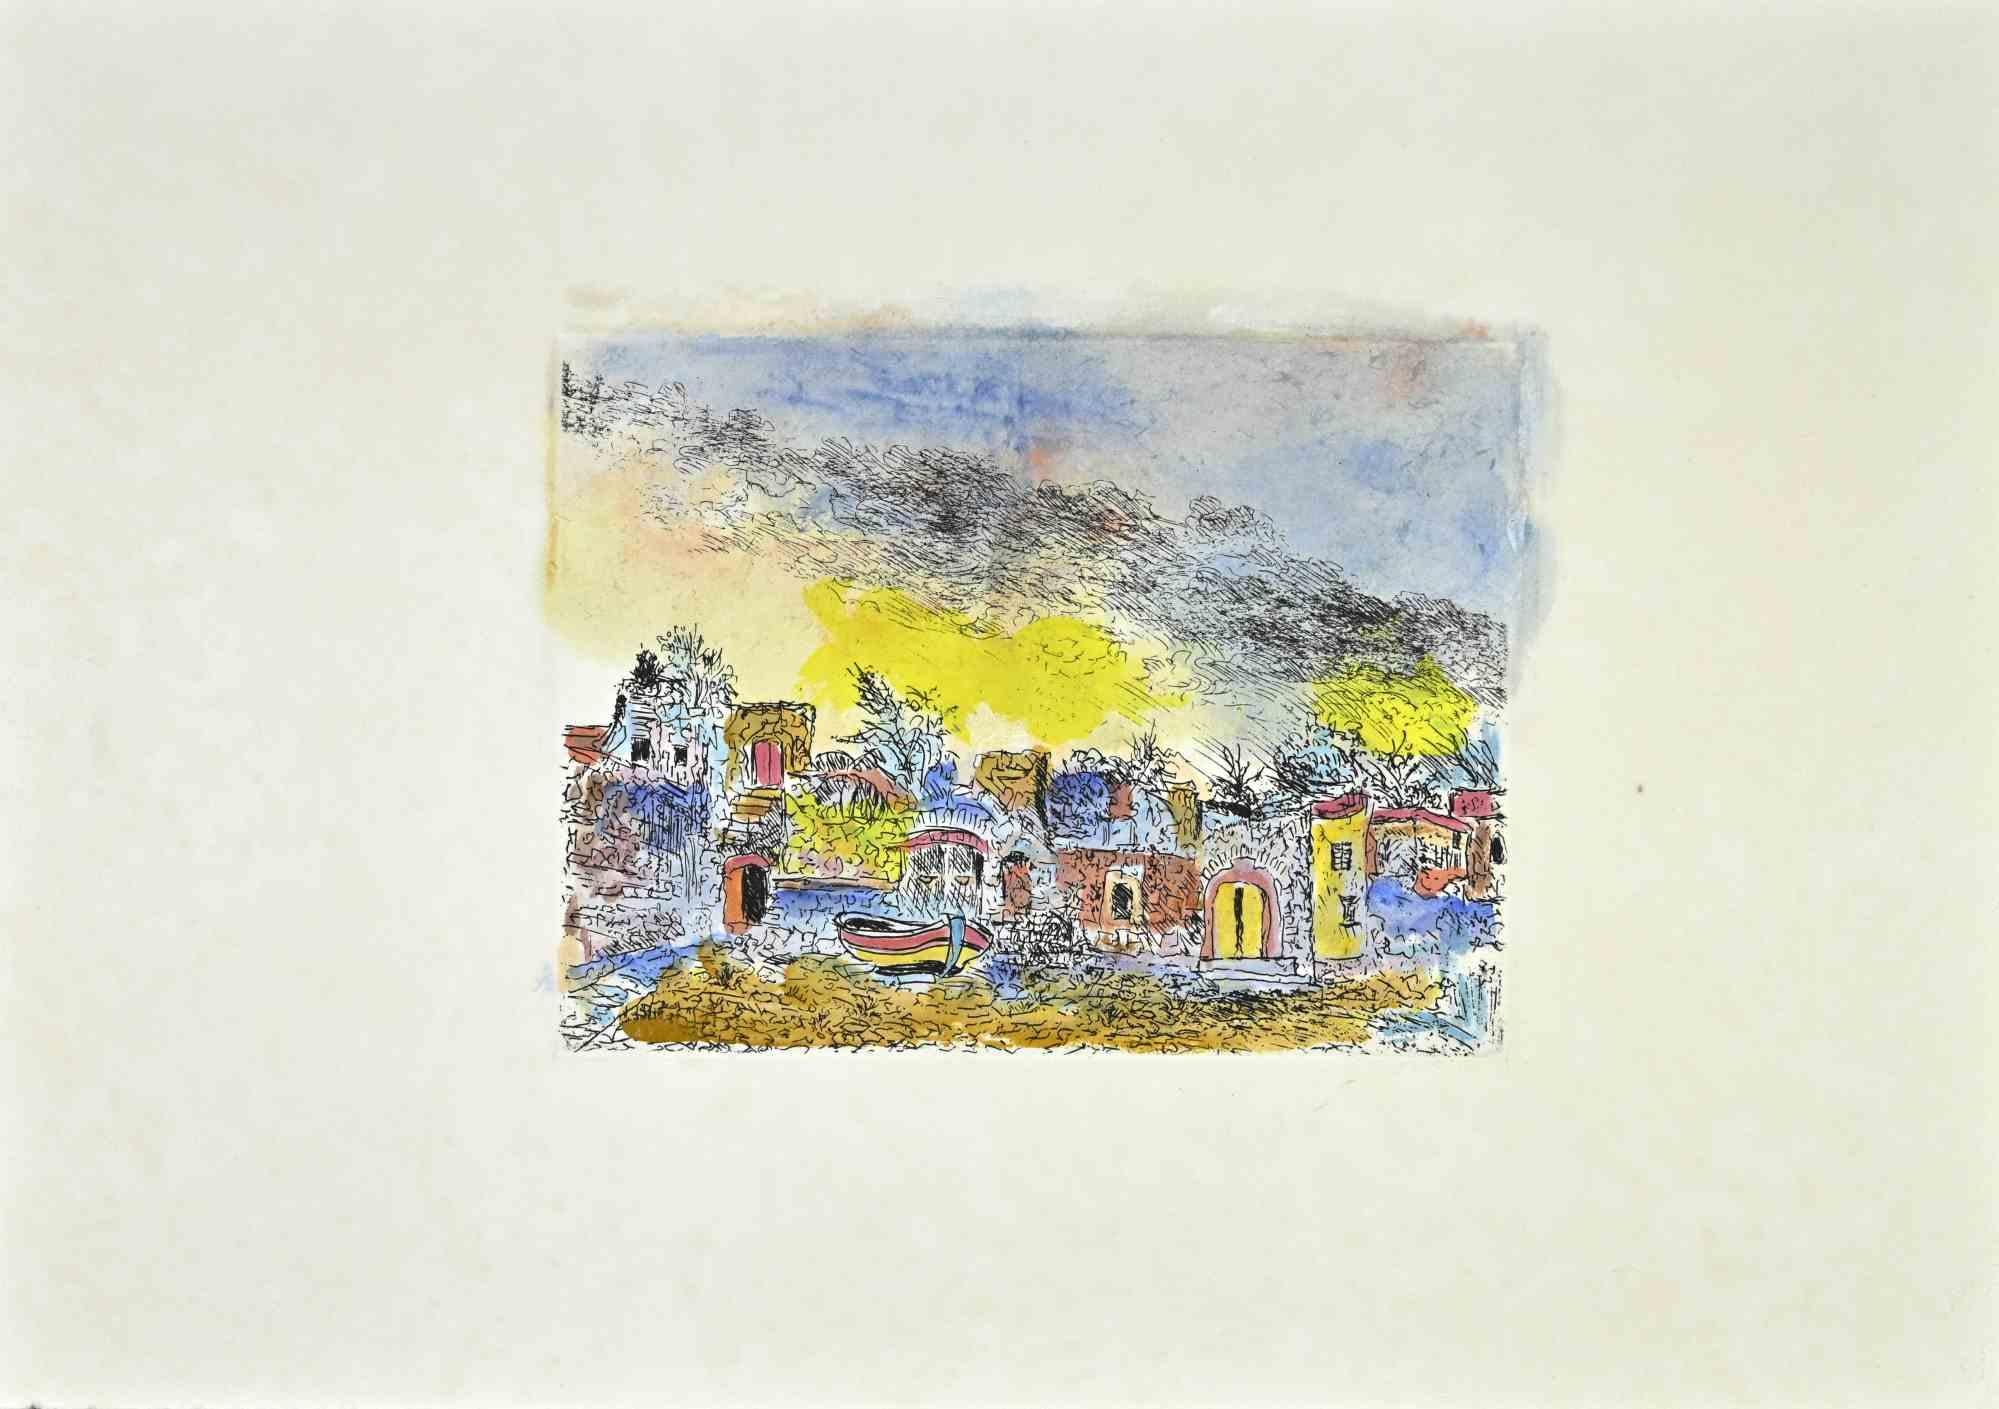 Scilla Landscape est une œuvre d'art réalisée par Giovanni Omiccioli (25 février 1901 - 1er mars 1975).

Gravure colorée sur carton.

L'artiste veut définir une composition équilibrée, à travers un signe doux et délicat.

Bonnes